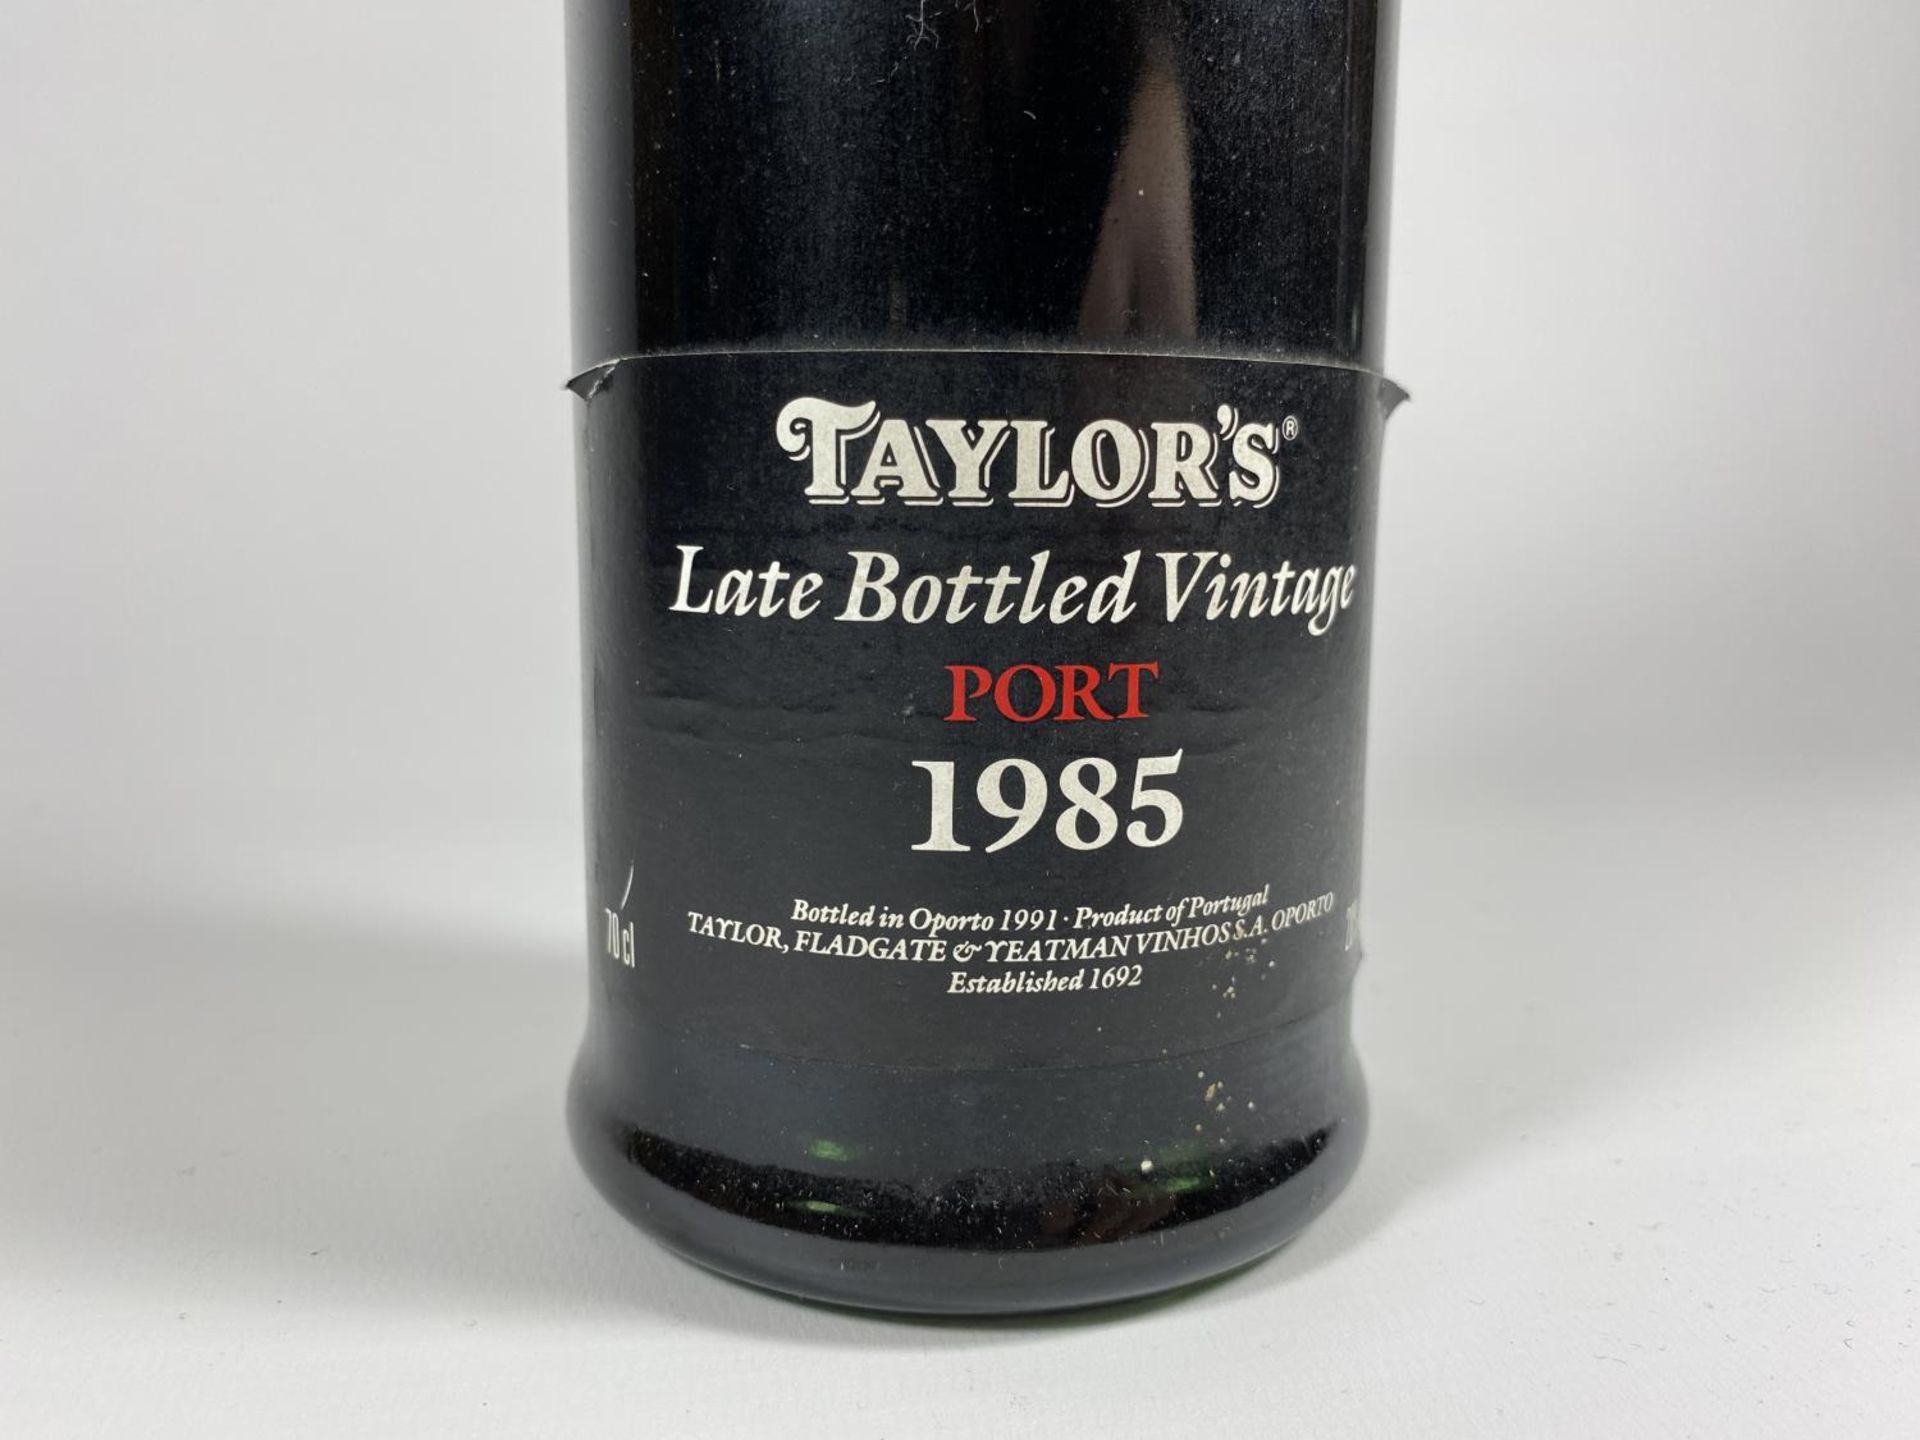 1 X 75CL BOTTLE - TAYLOR'S LATE BOTTLED 1985 VINTAGE PORT - Image 2 of 4